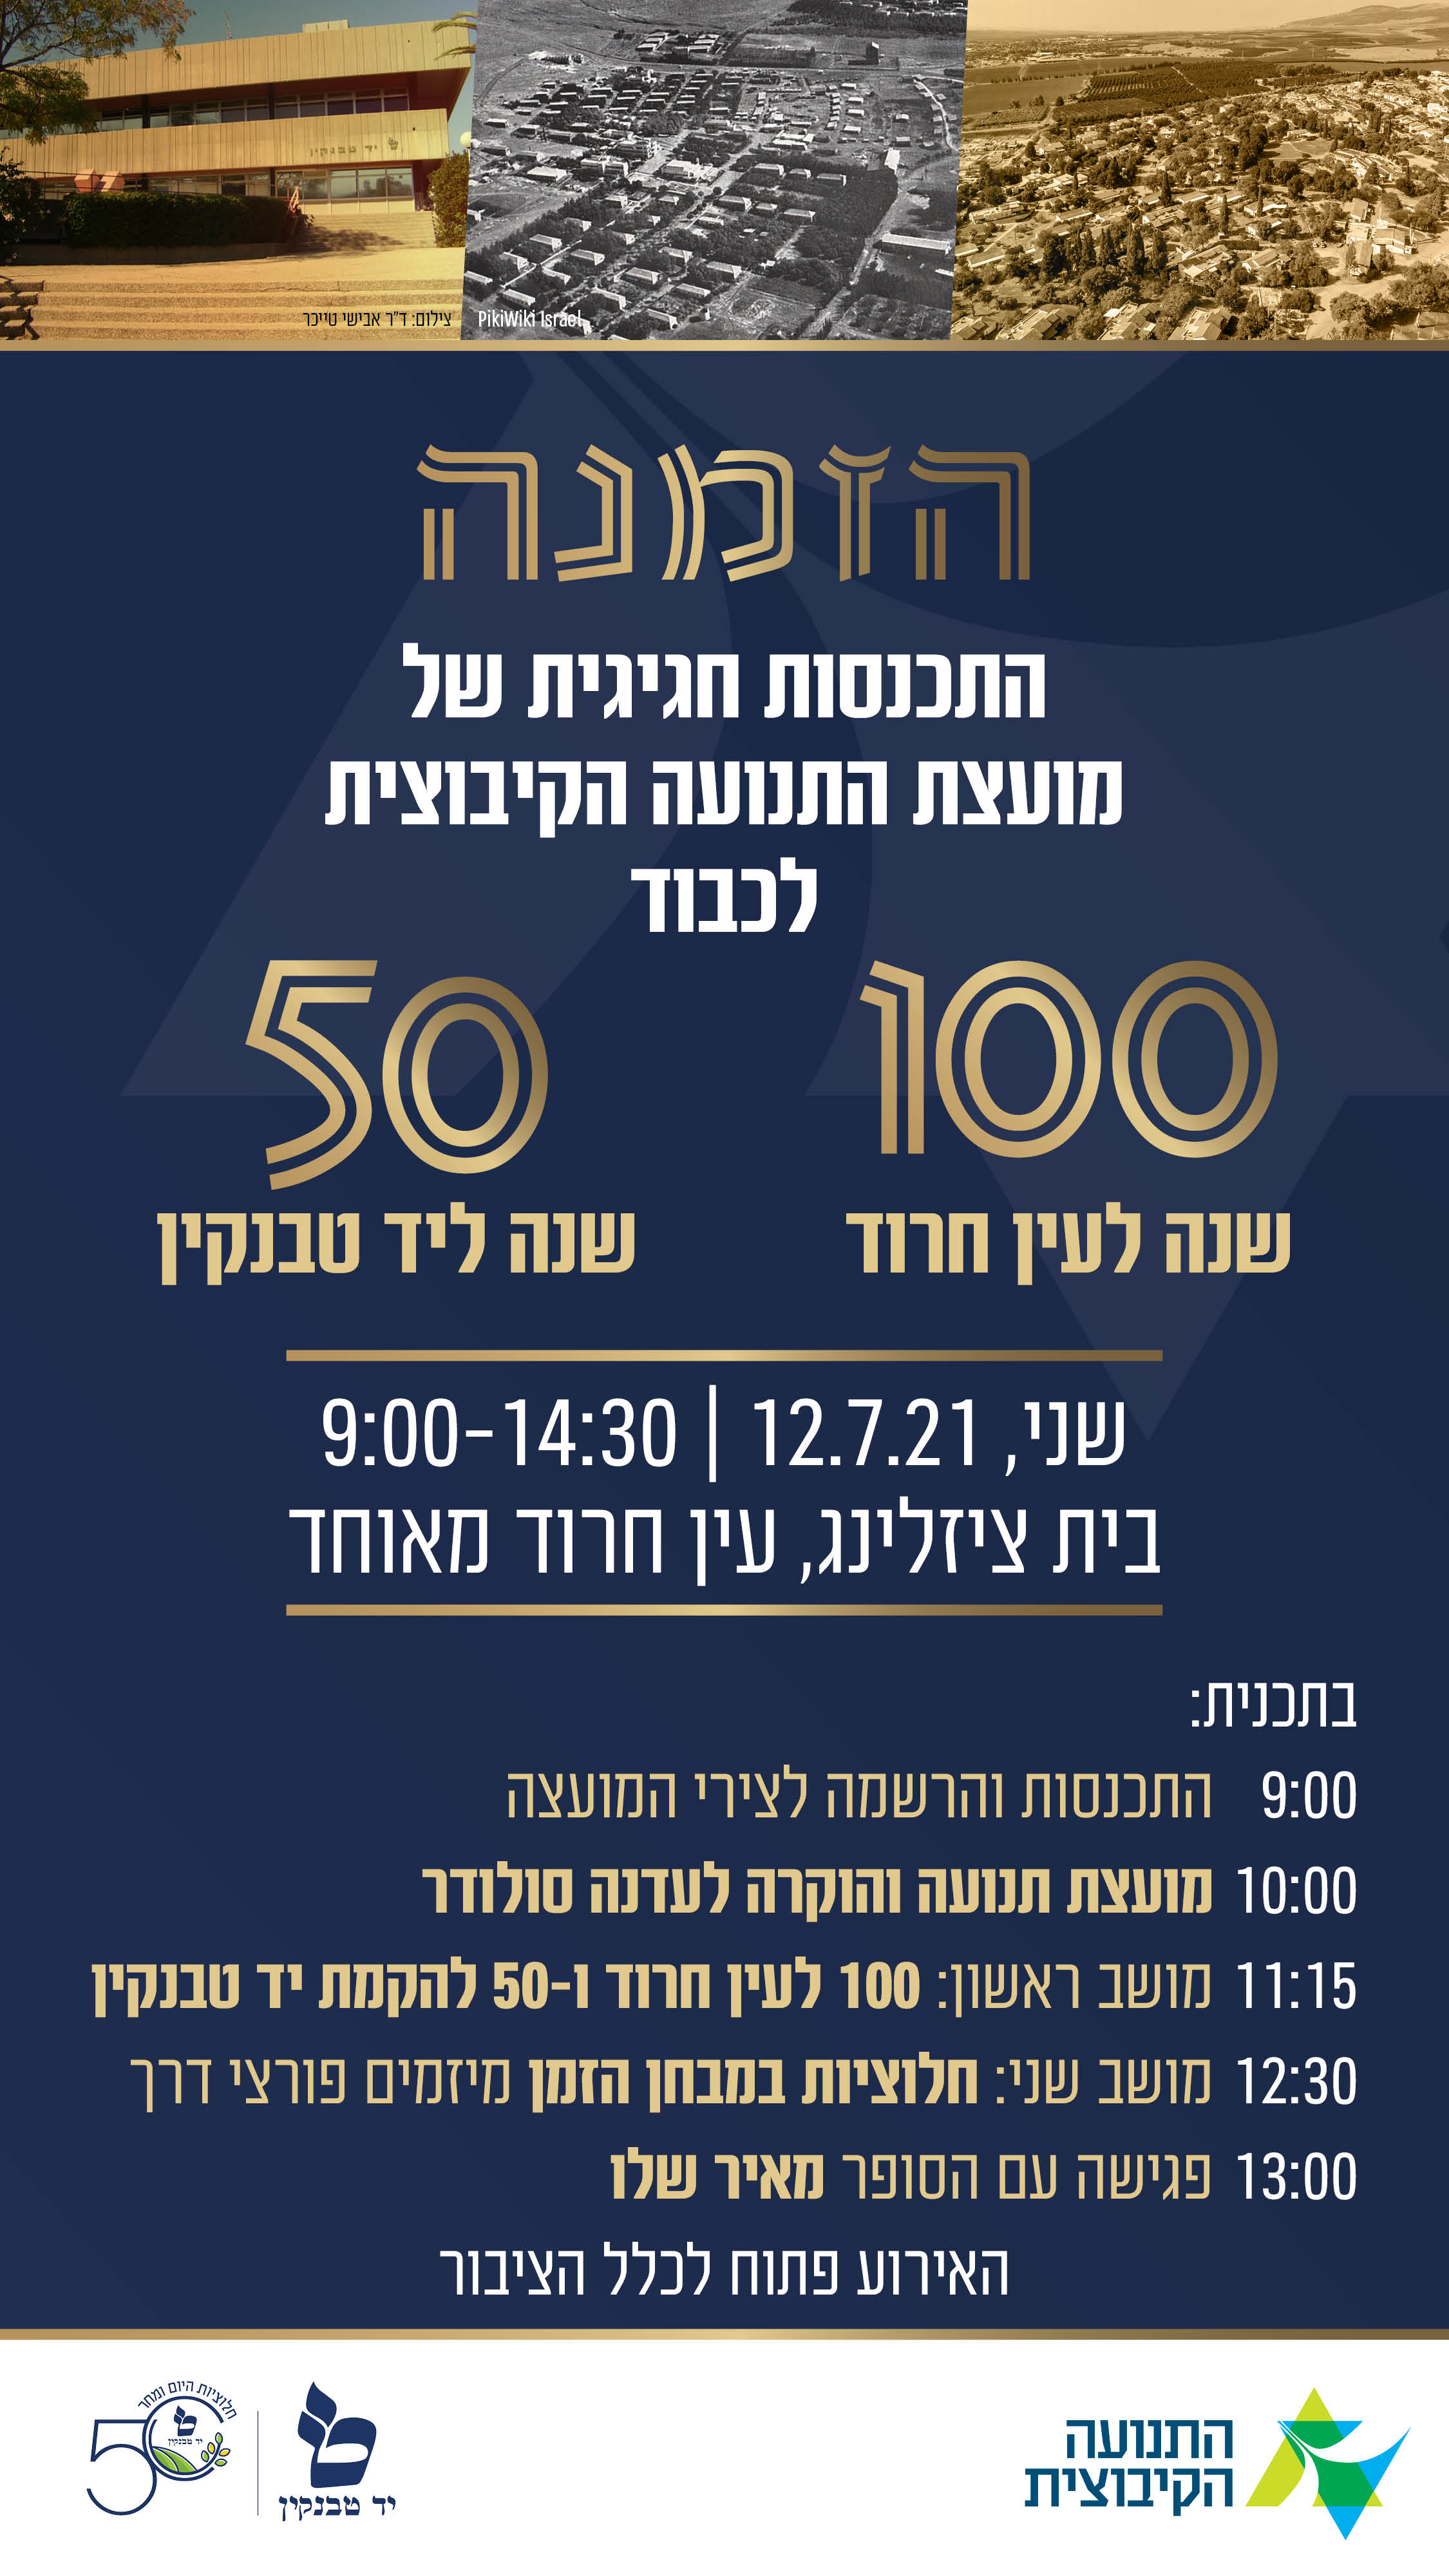 הזמנה לישיבת מועצת התנועה הקיבוצית (3/2021) שתיוחד לציון 100 שנה לעין חרוד ו-50 שנה למותו של יצחק טבנקין